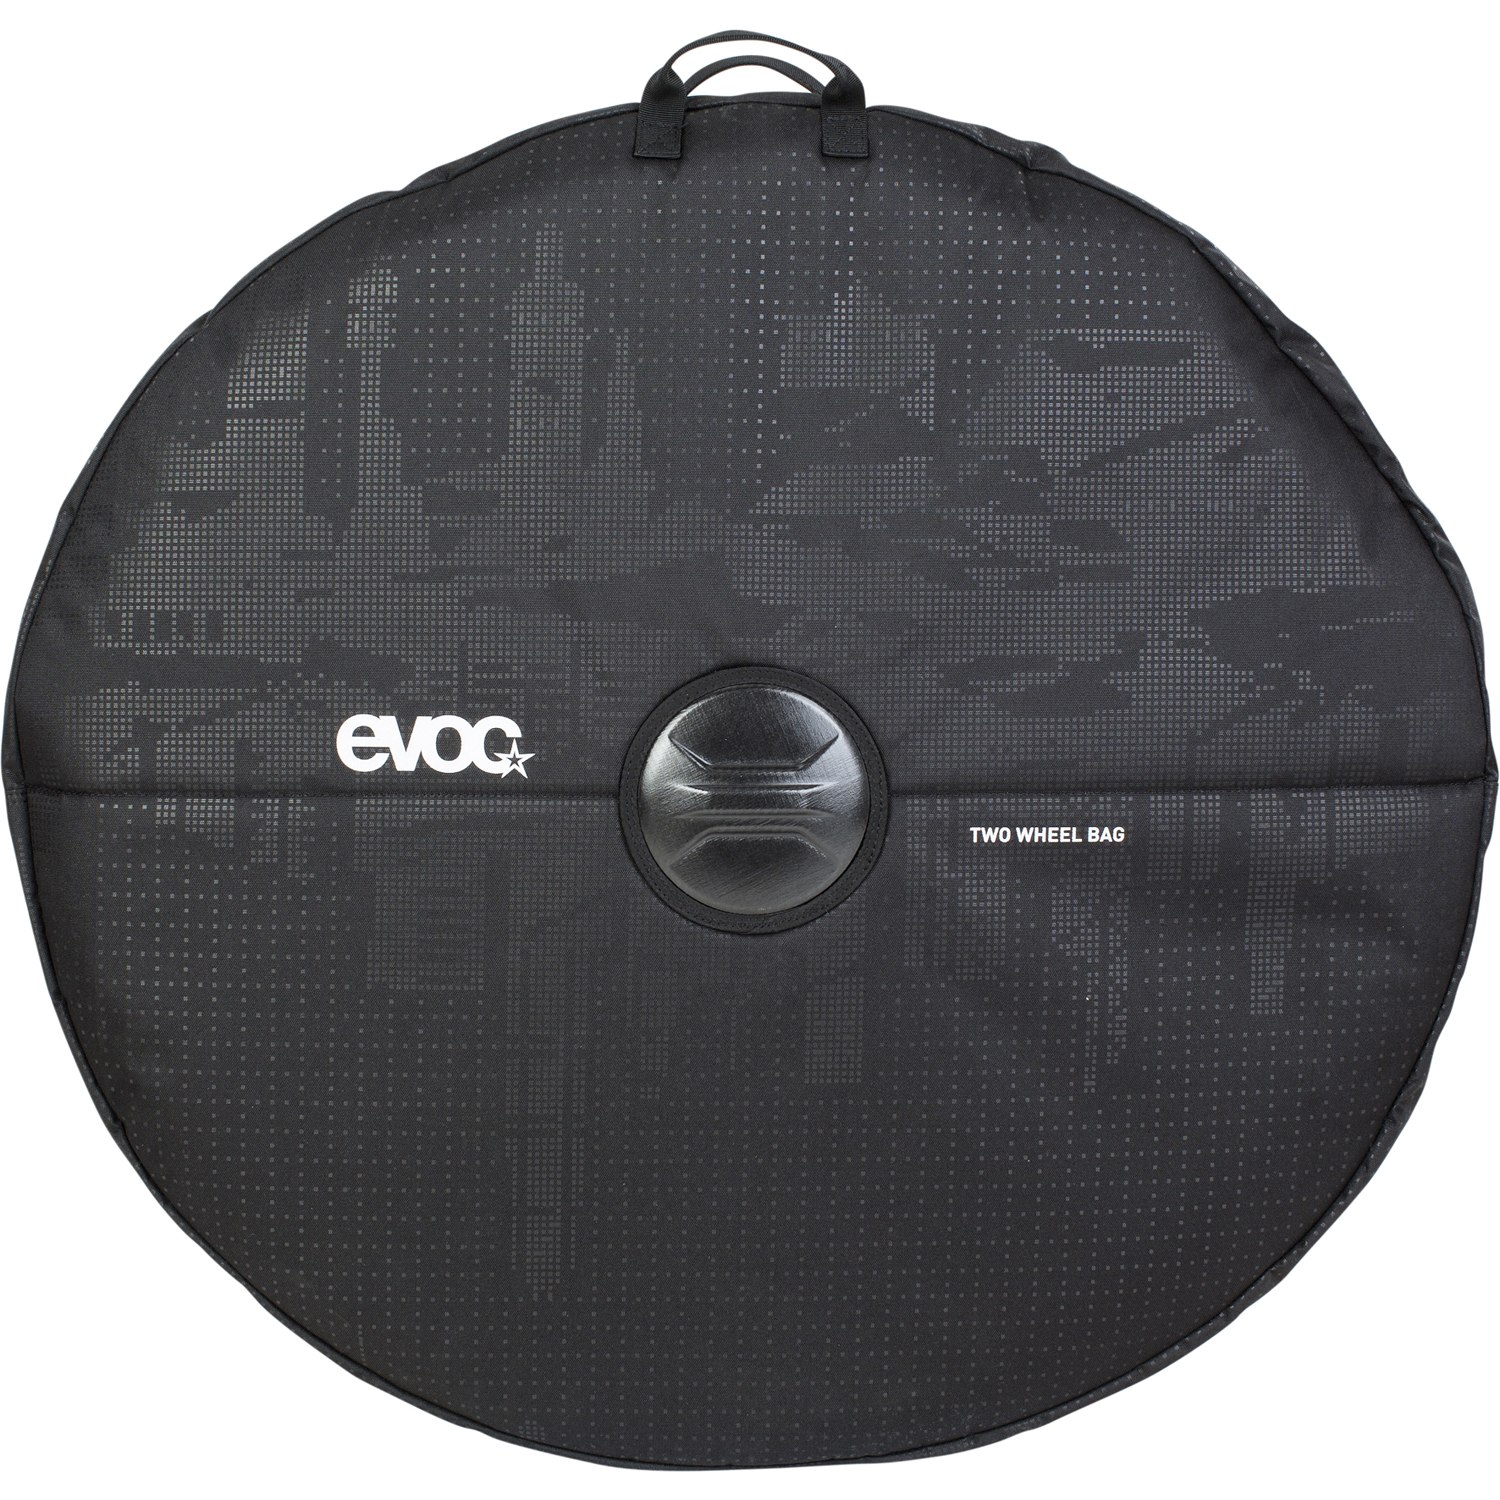 Produktbild von Evoc TWO WHEEL BAG - Reifentasche - Black